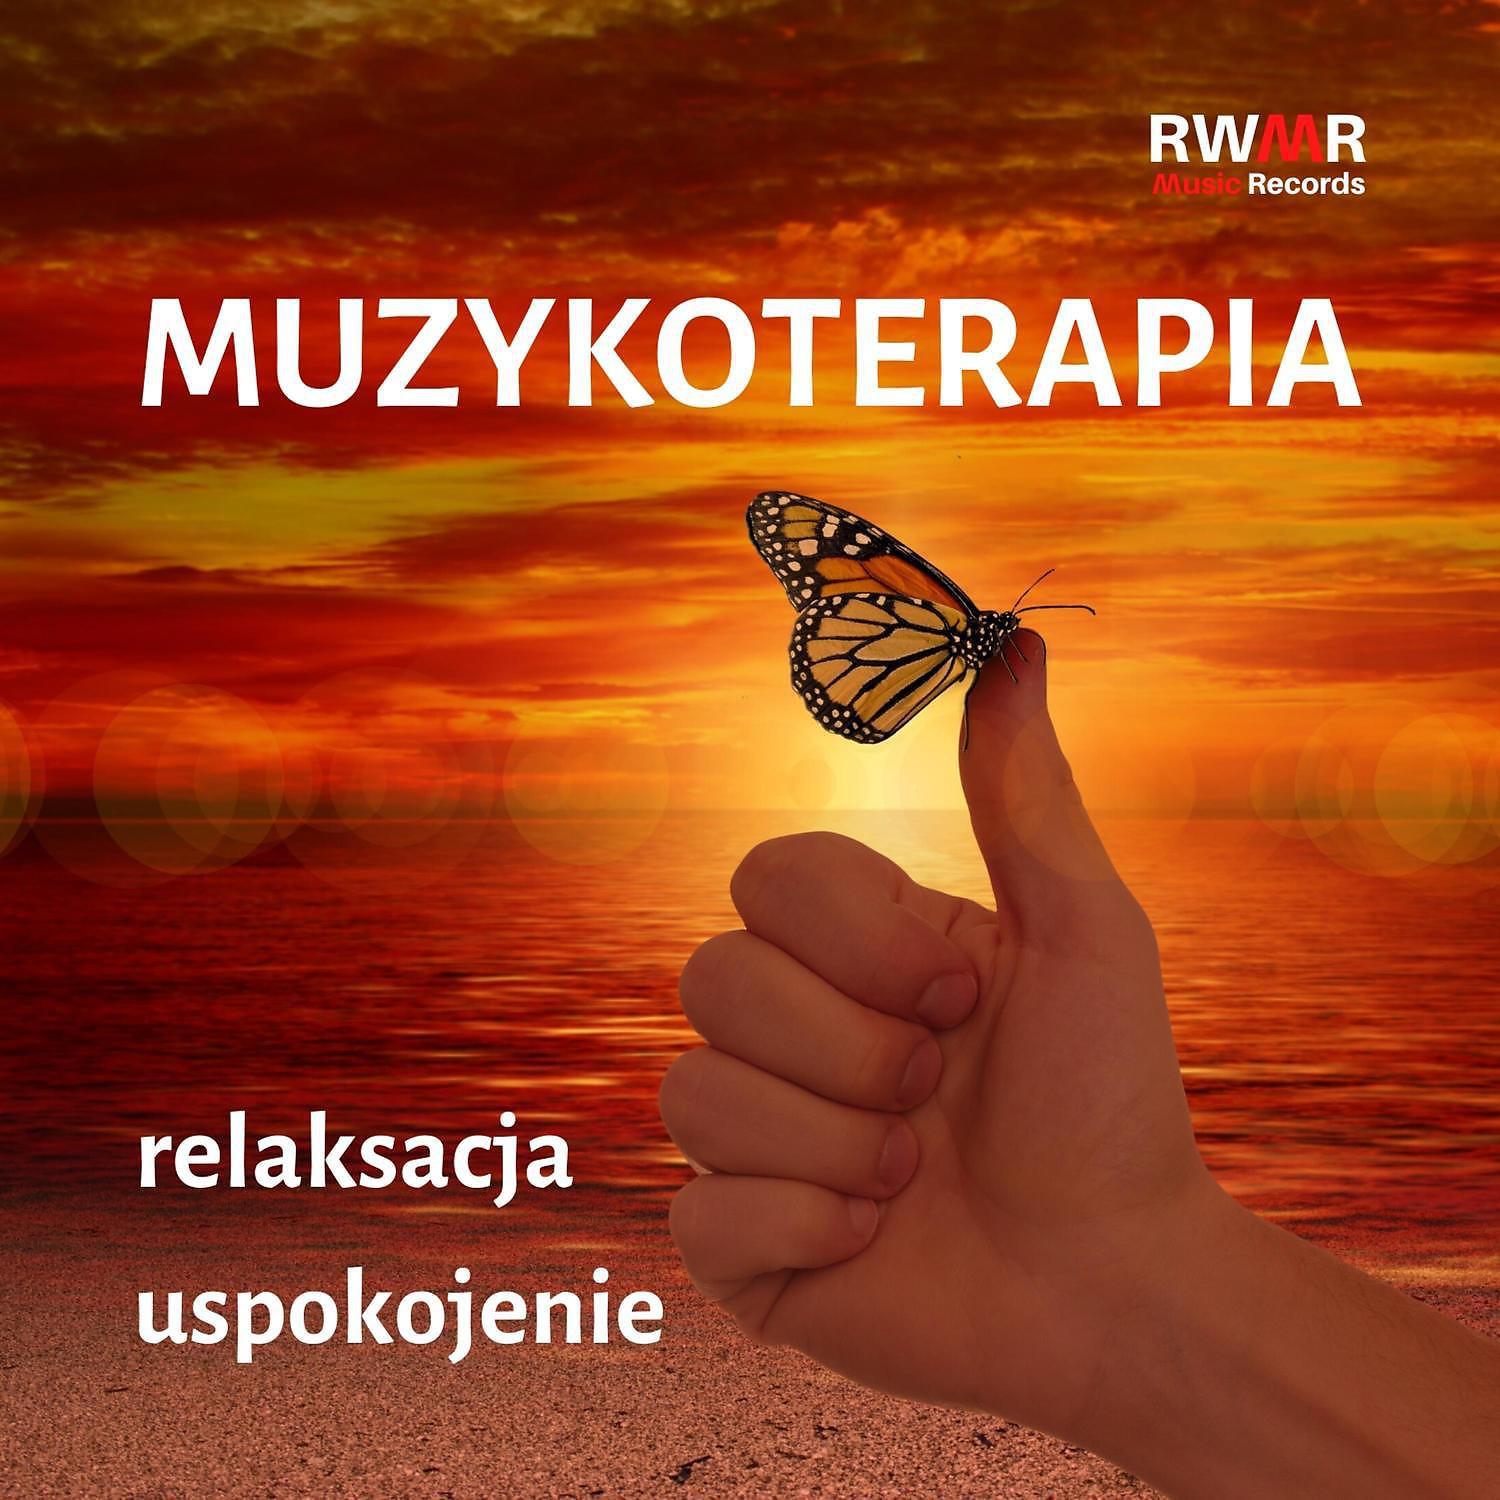 Постер альбома Muzykoterapia – Relaksacja, spokoj, medytacja, joga, praktyka oddechowa, muzyka relaksacyjna, masaz, sen